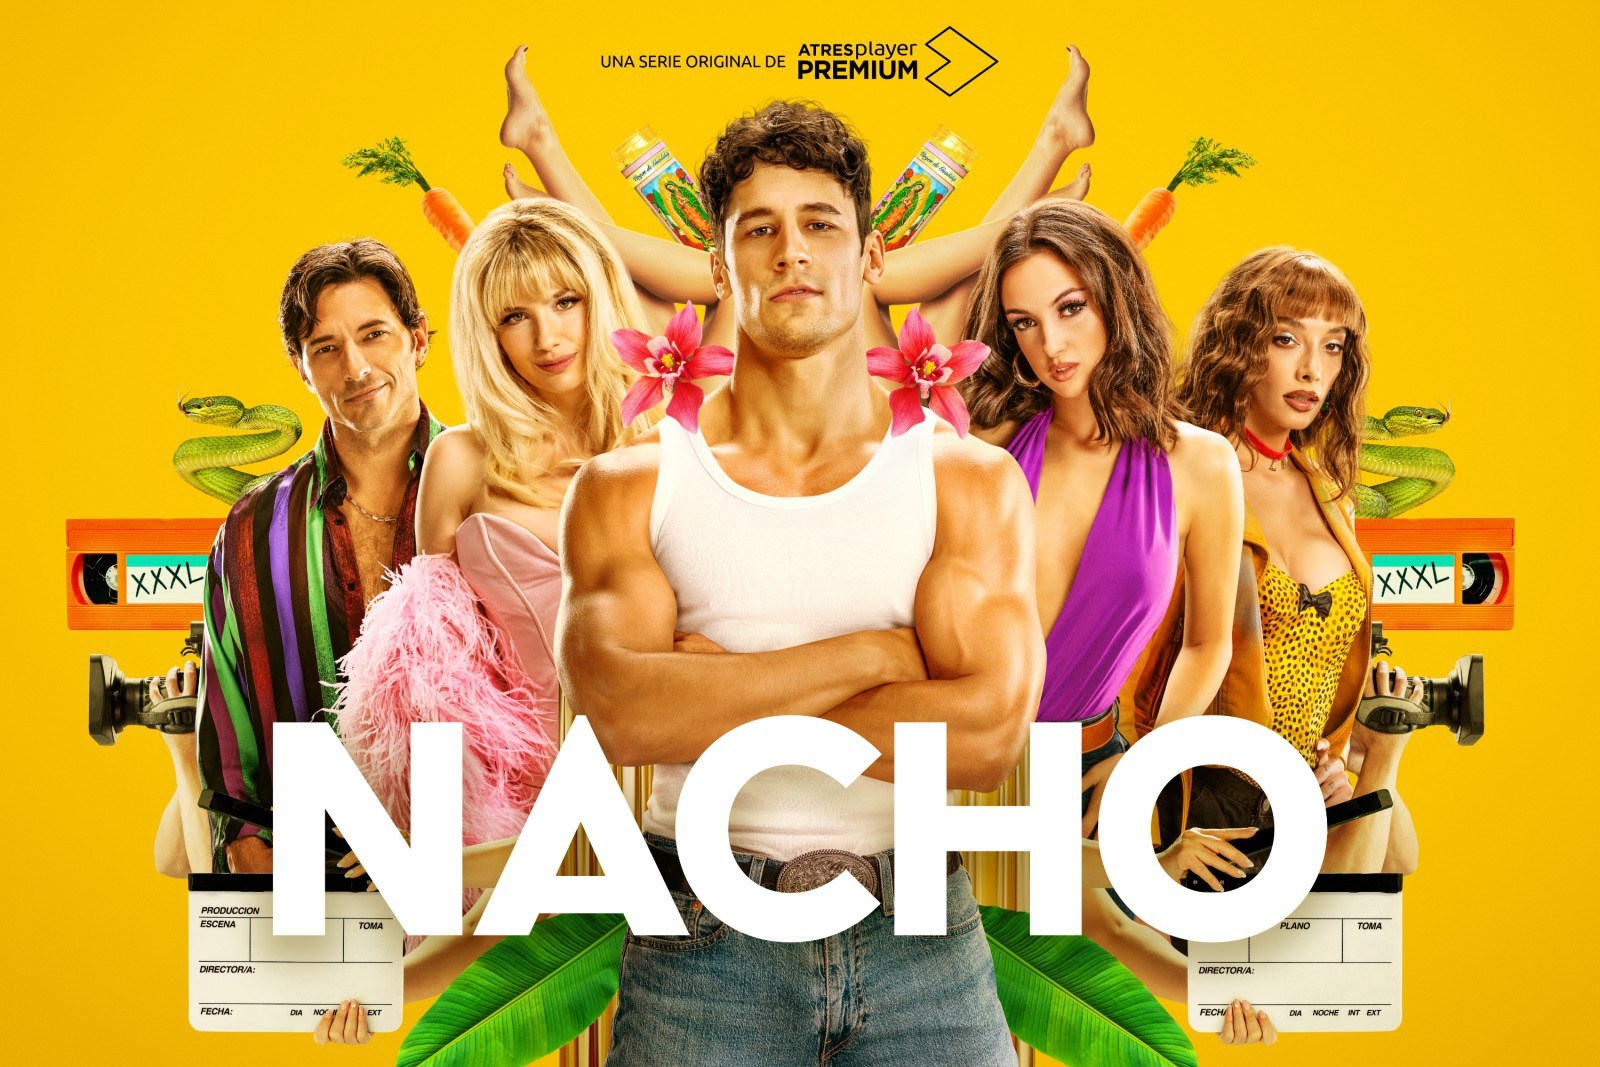 Póster de la serie Nacho, basada en los inicios del famoso actor de cine para adultos Nacho Vidal